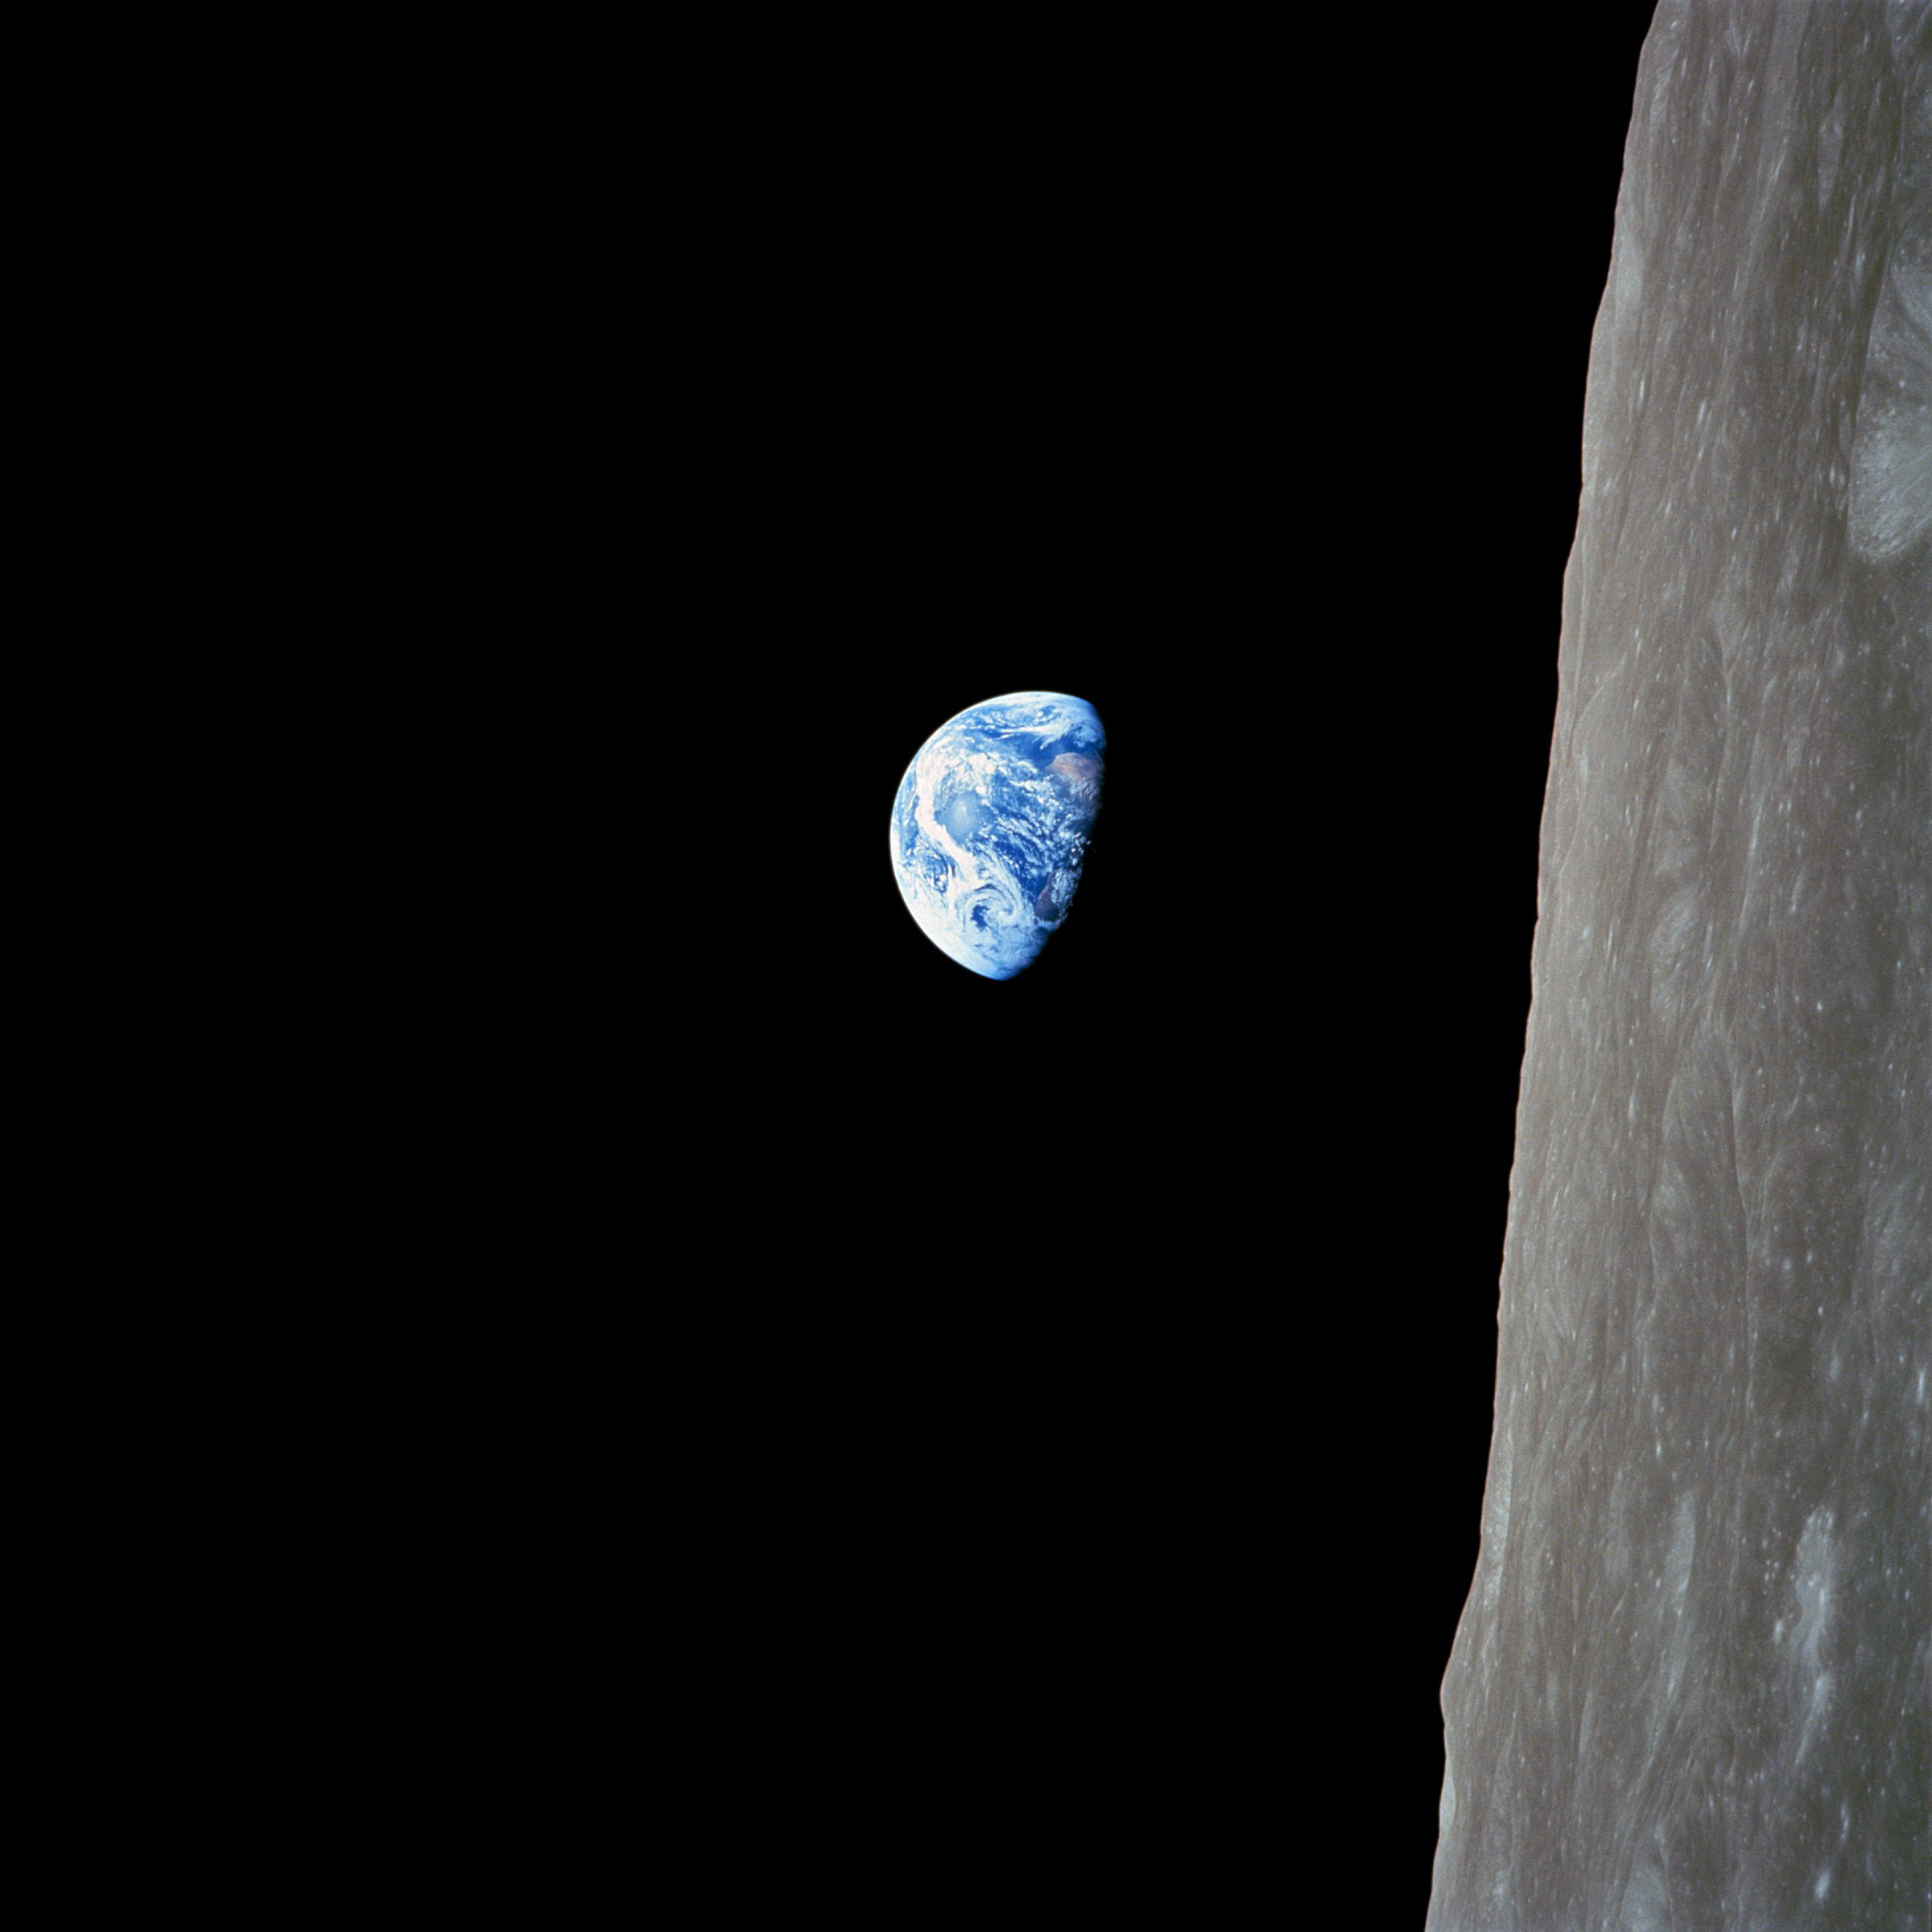 フリー画像 地球 アース 宇宙 スペース 月の風景 フリー素材 画像素材なら 無料 フリー写真素材のフリーフォト